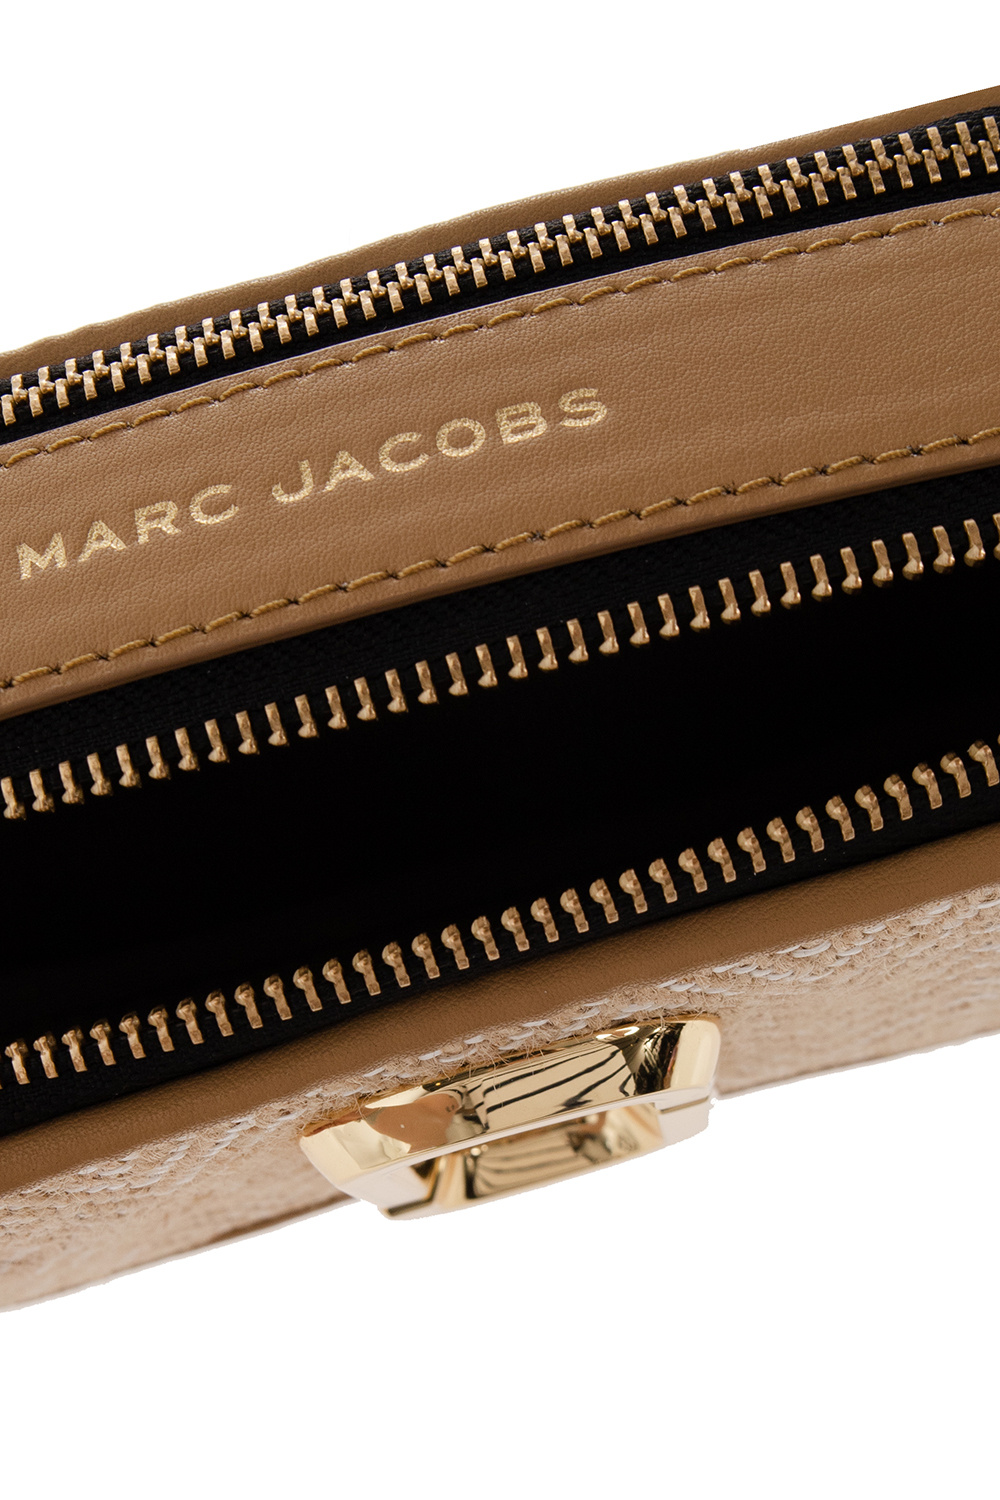 Marc Jacobs ‘The Mixed Media’ shoulder bag